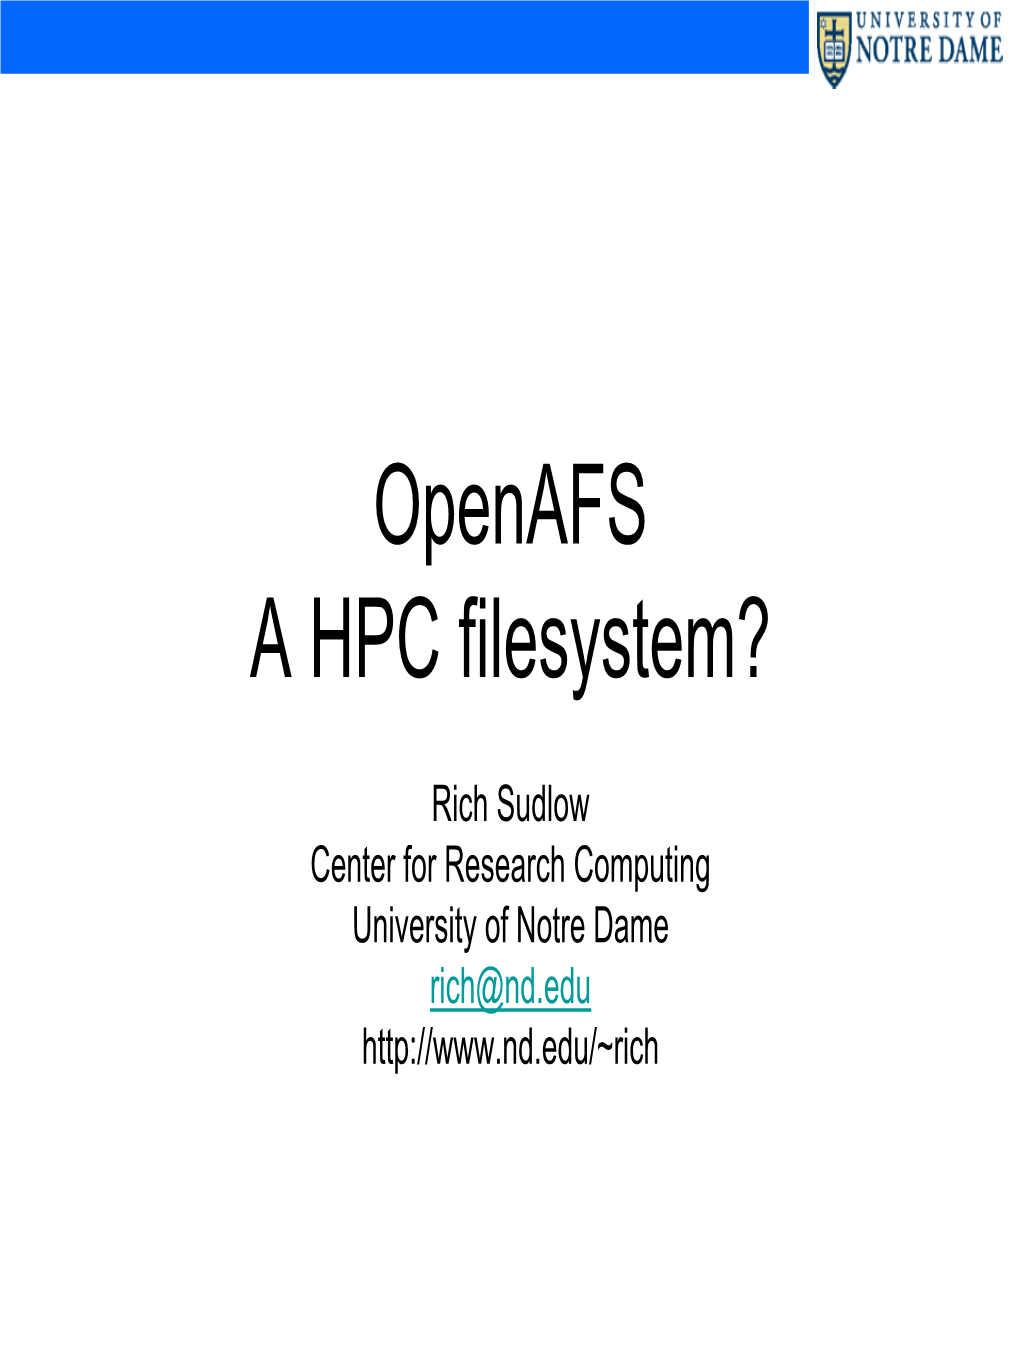 Openafs a HPC Filesystem?